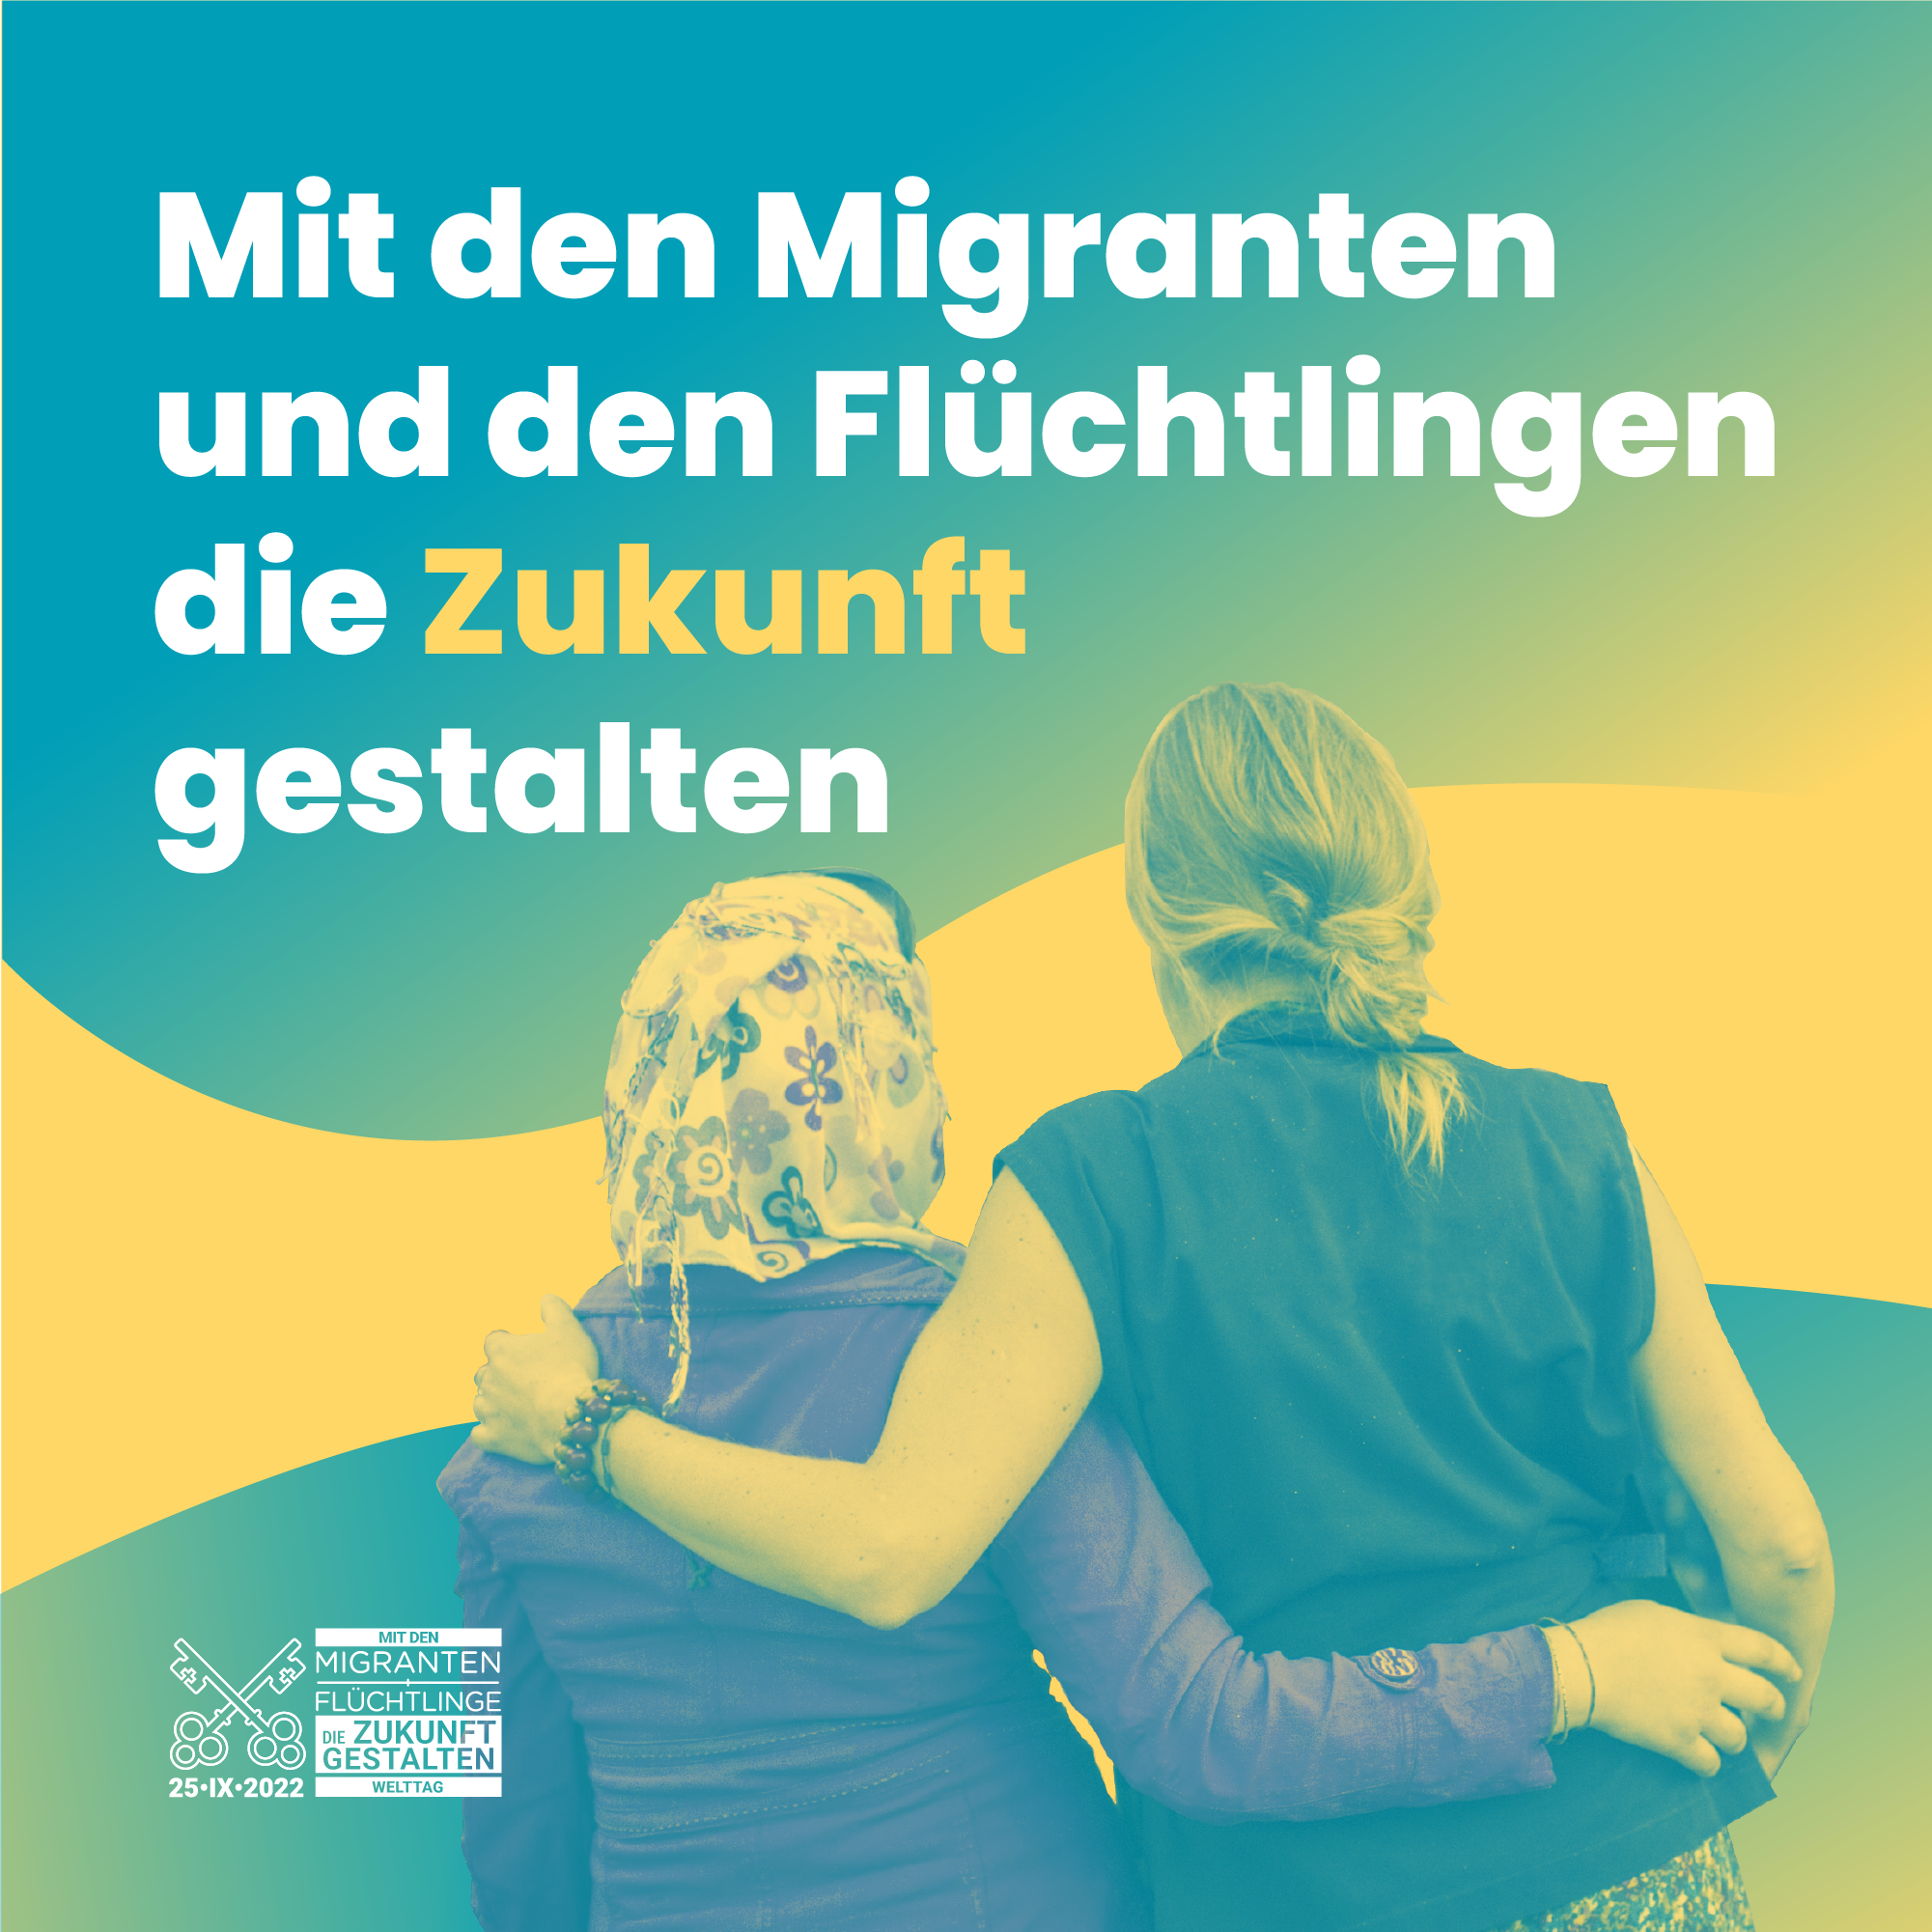 Visual zum Welttag des Migranten und Flüchtlings